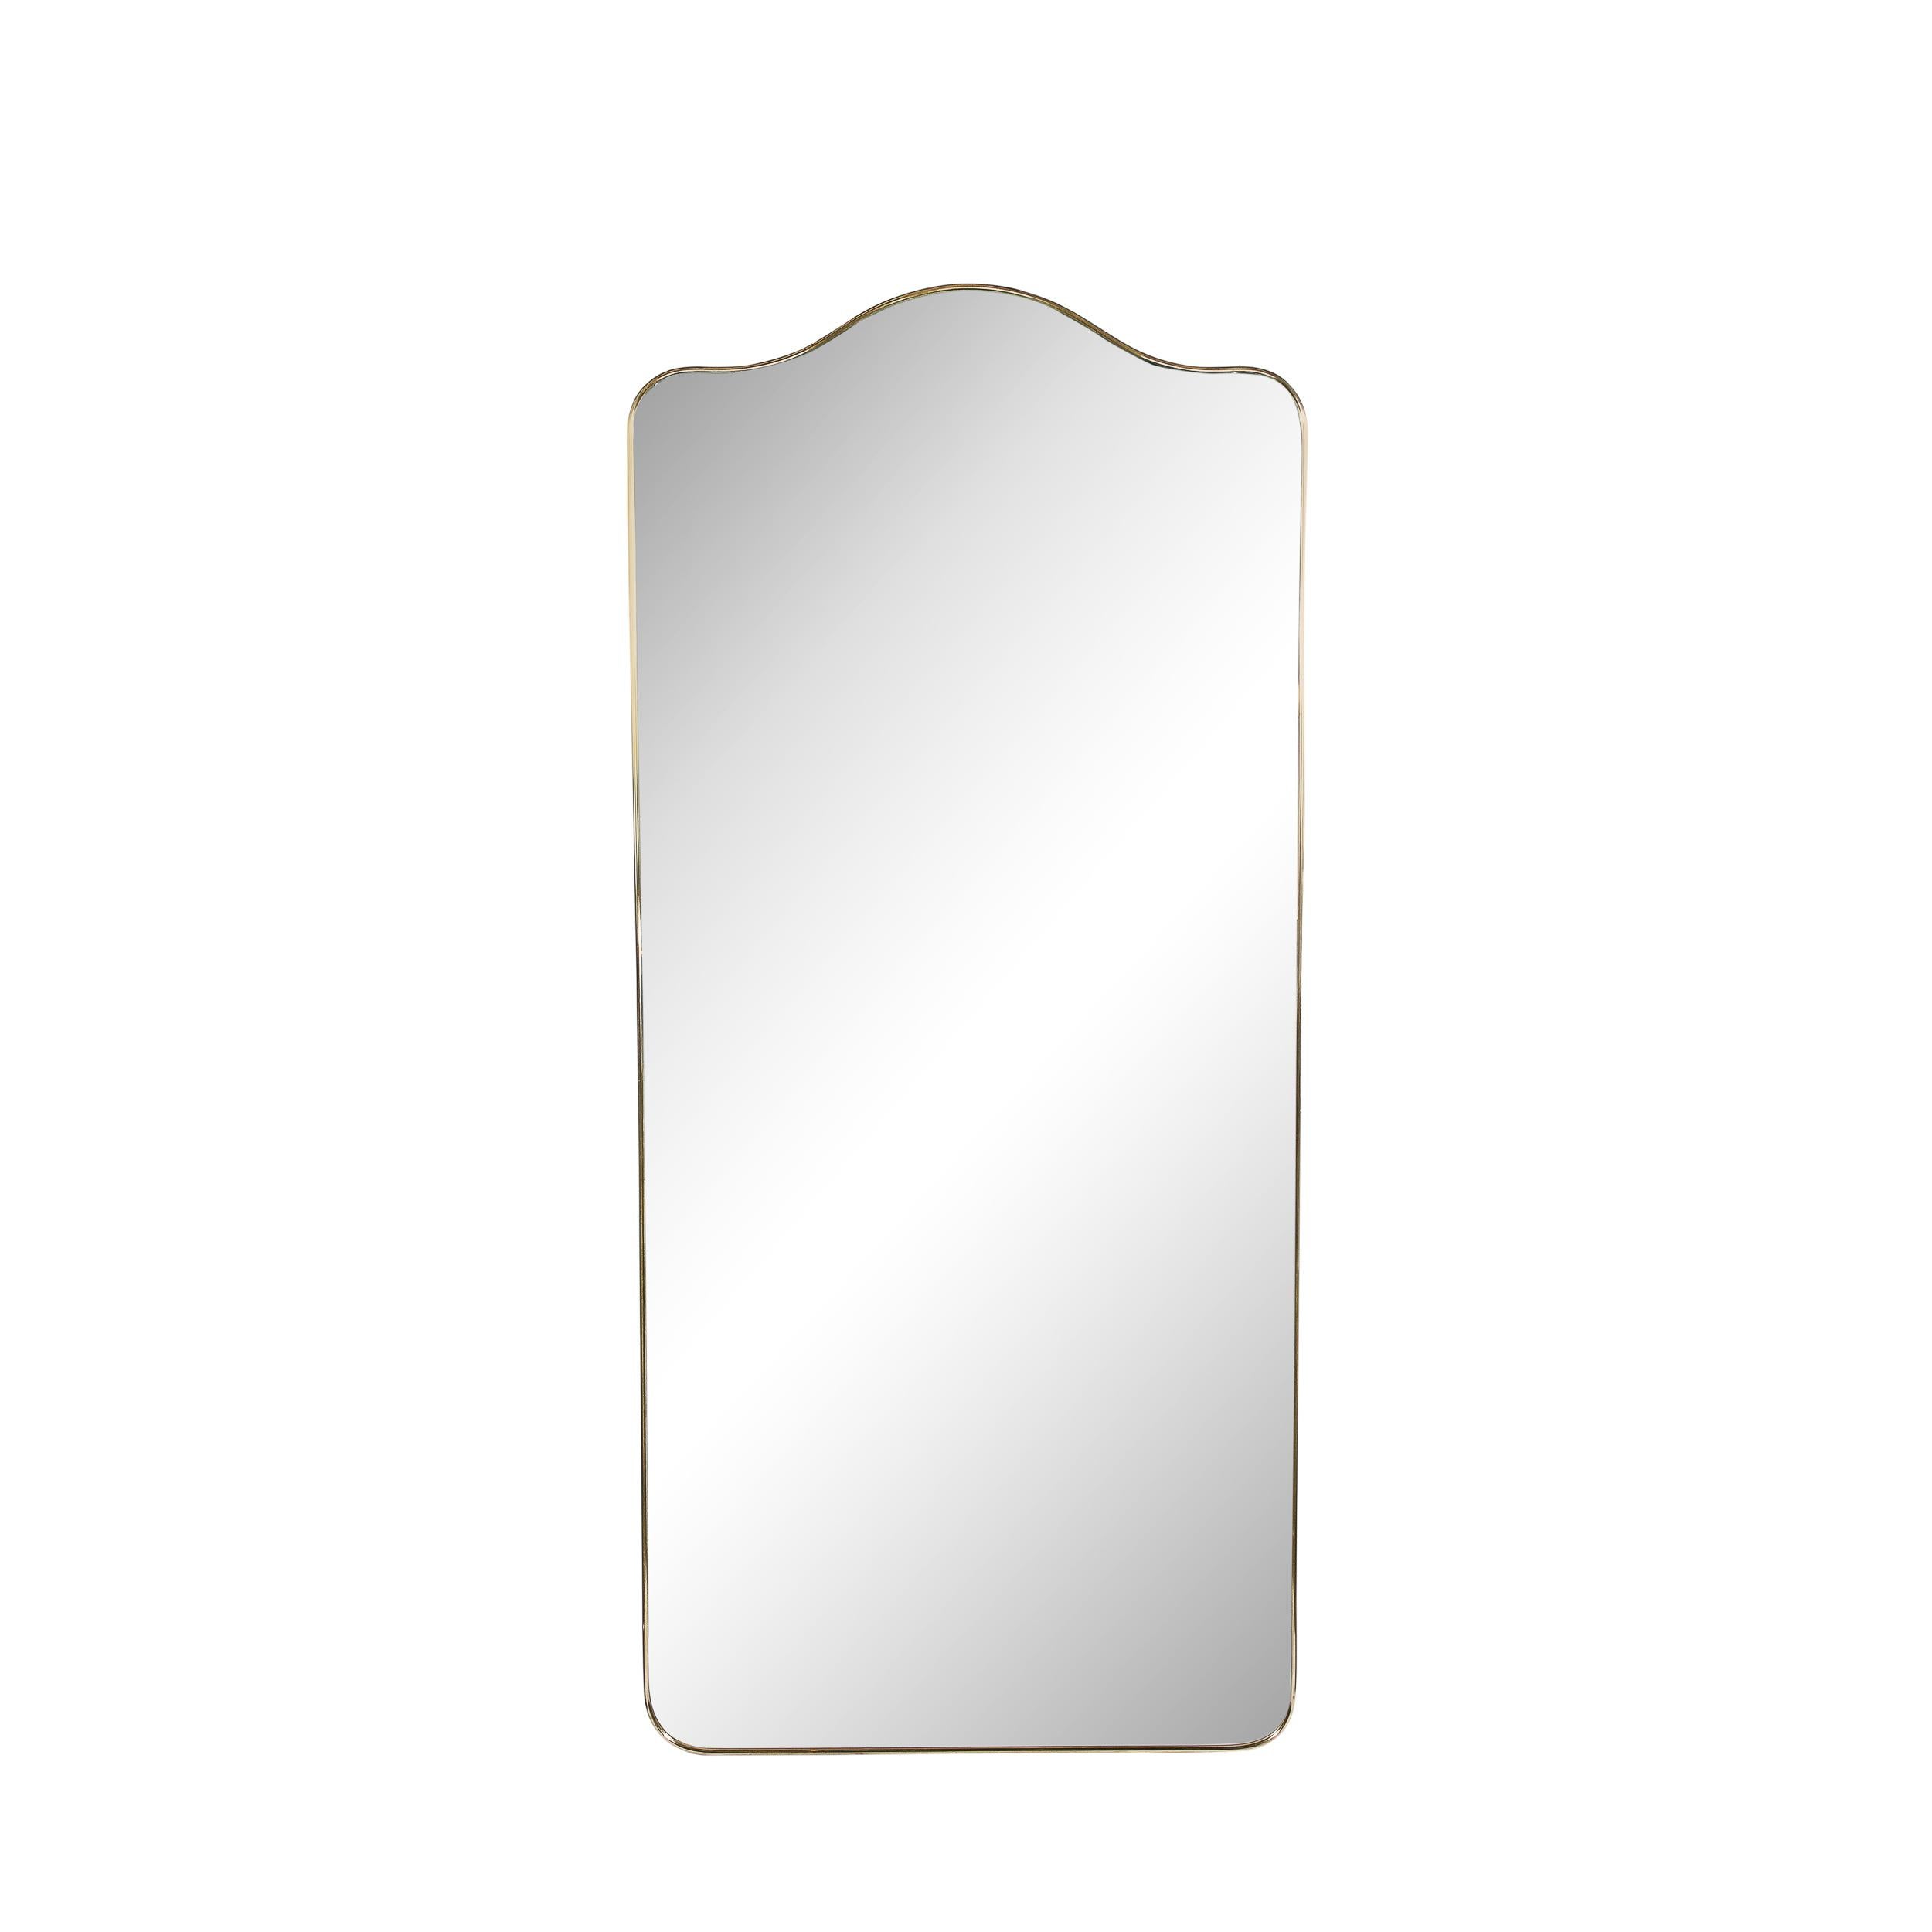 Dieser elegante, moderne Spiegel aus Messing mit Rundbogenmotiv wurde um 1950 in Italien hergestellt. Er hat eine rechteckige Form mit abgerundeten Ecken und einem subtilen bogenförmigen Motiv auf der Oberseite, die mit glänzendem Messing ummantelt